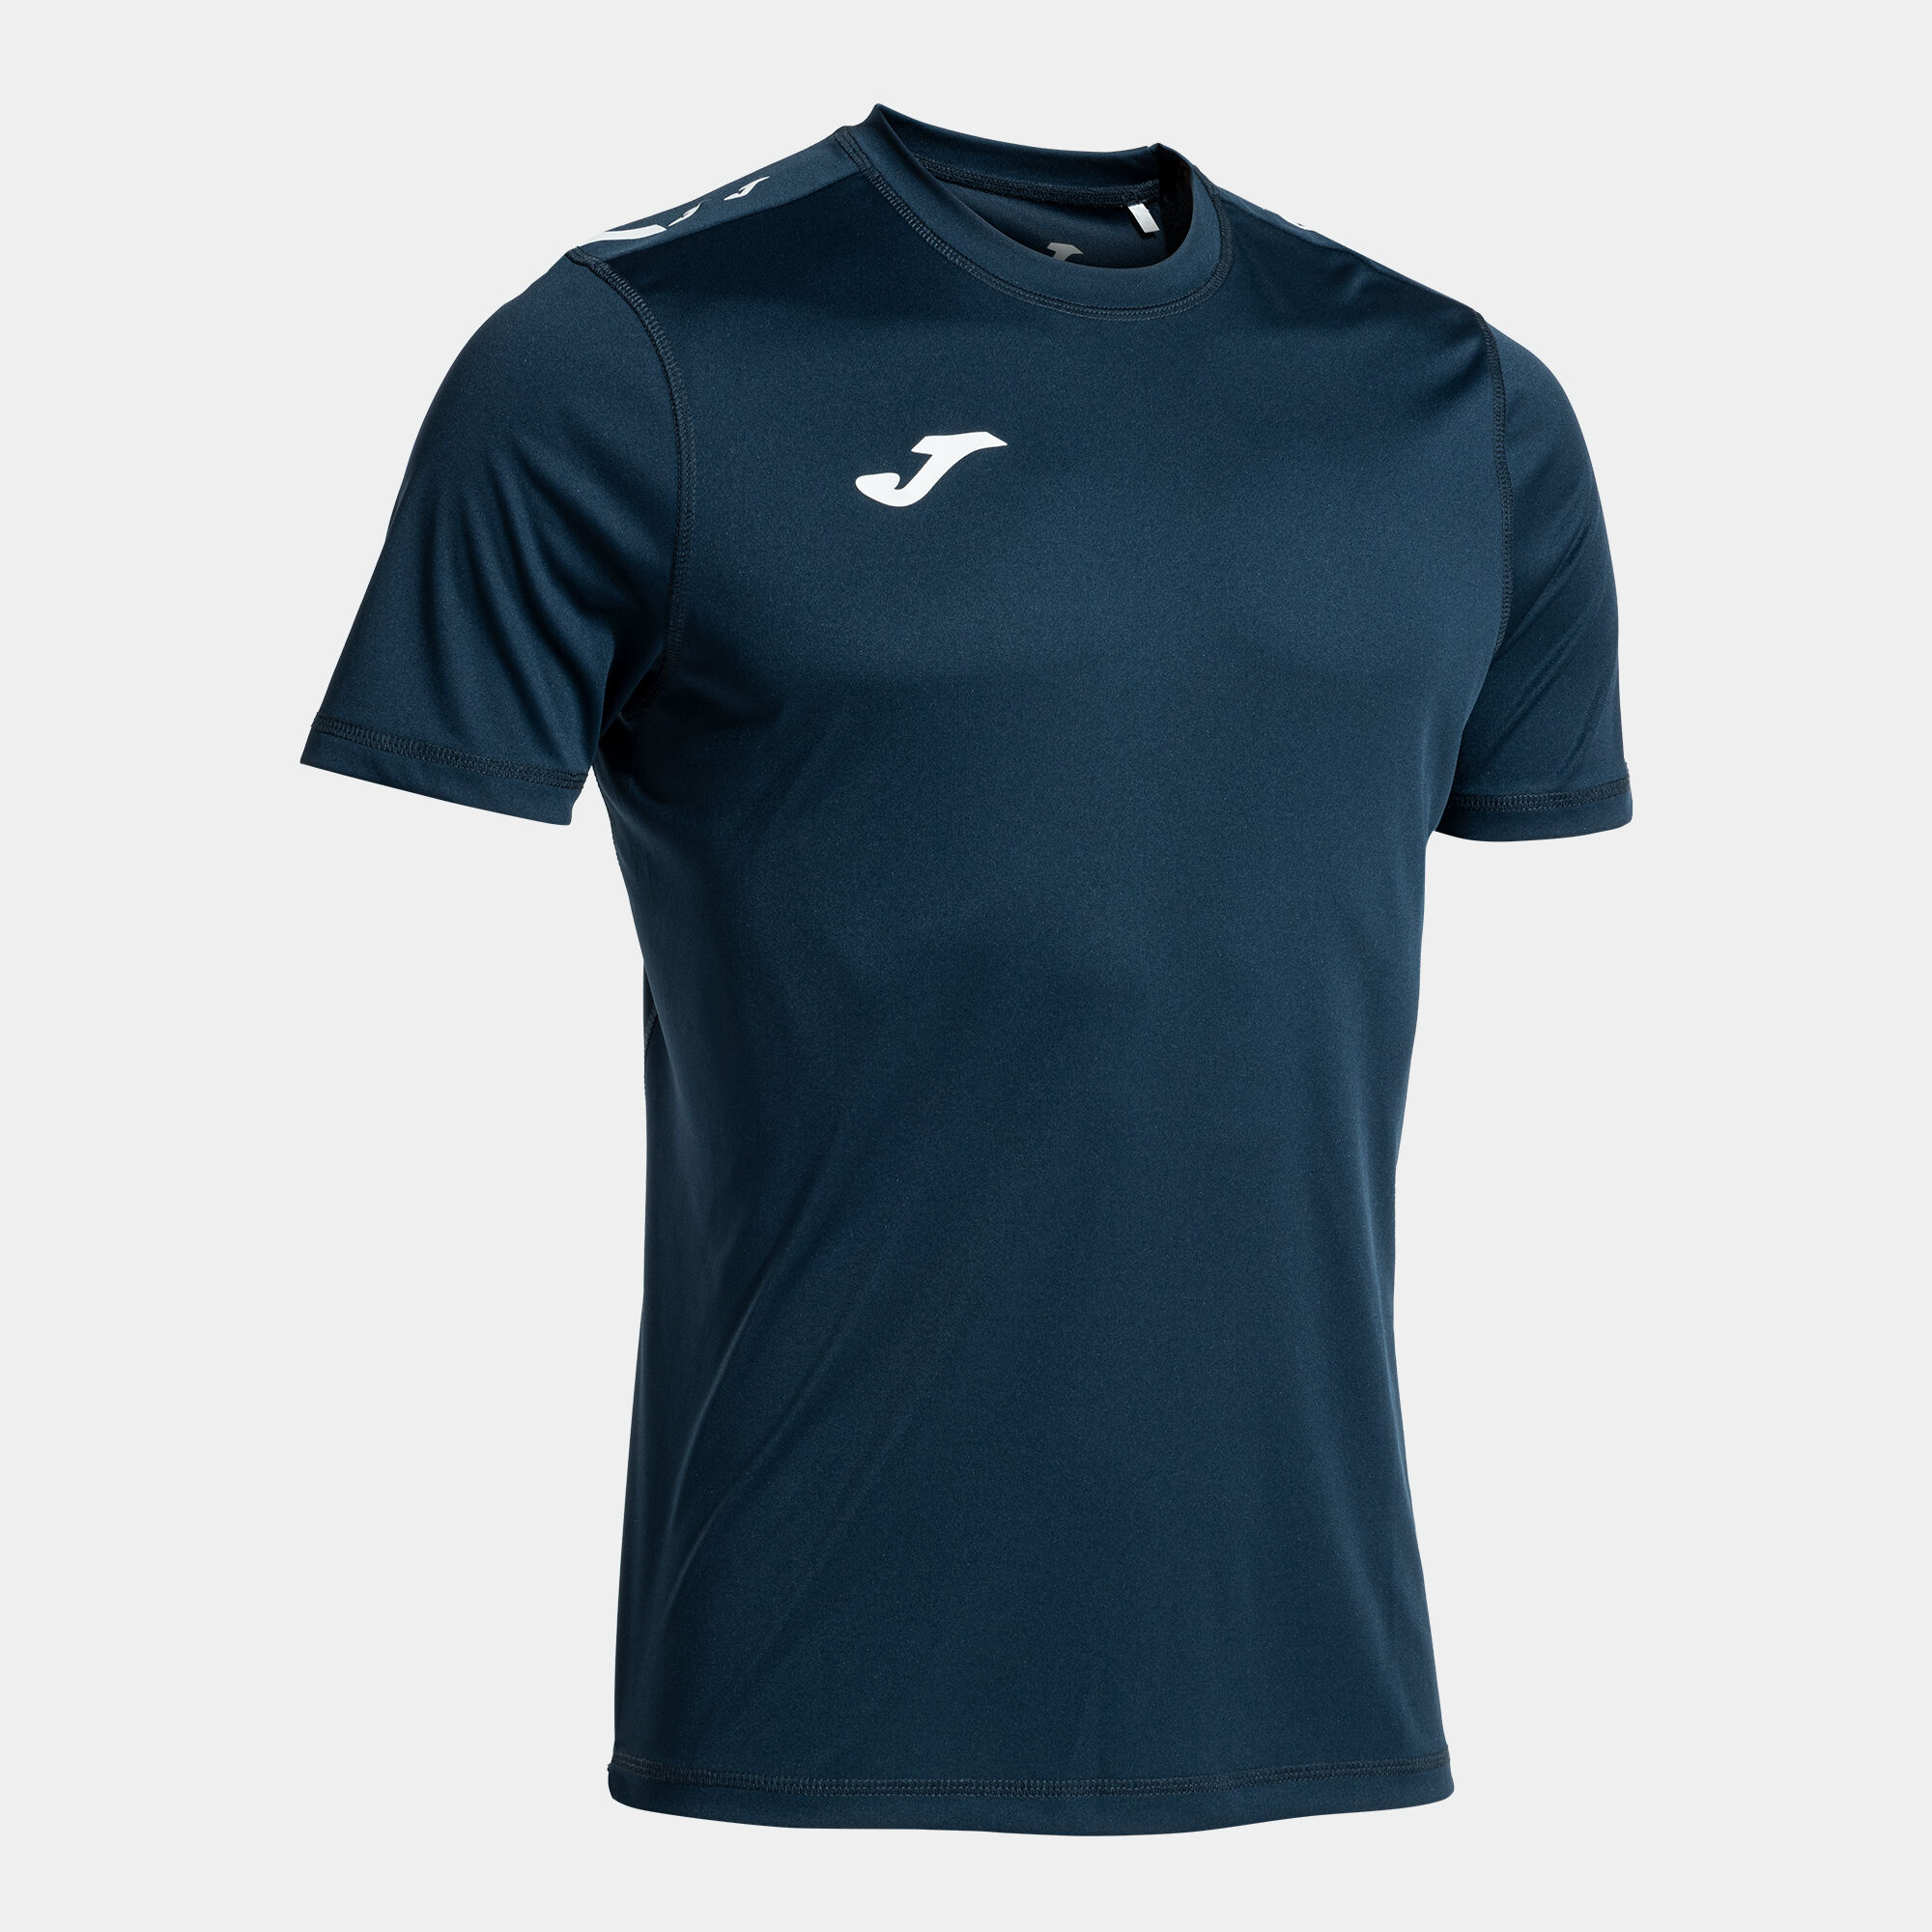 Camiseta manga corta hombre Olimpiada handball marino